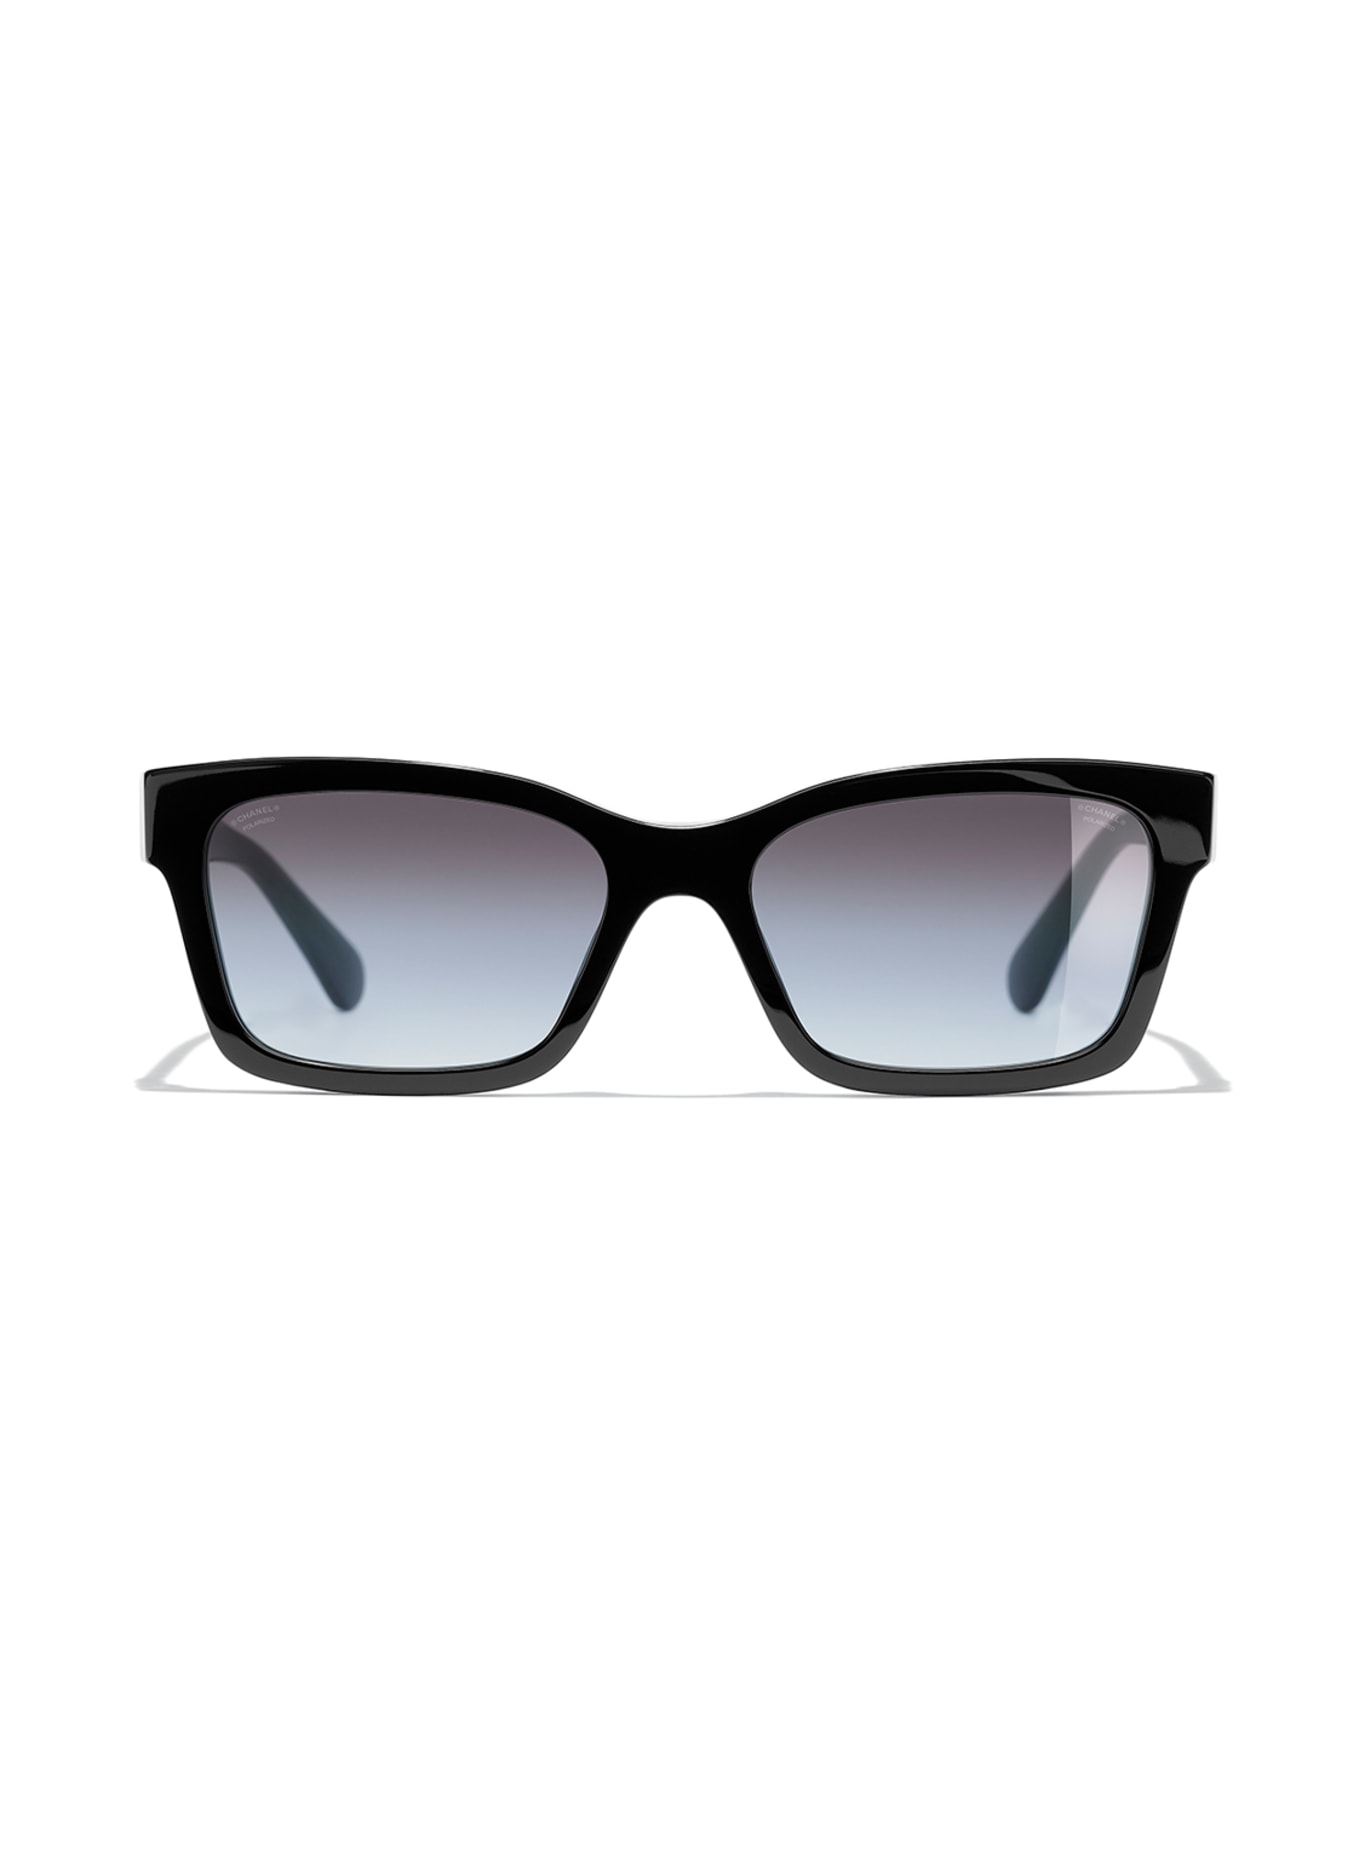 CHANEL Quadratische Sonnenbrille, Farbe: C501S8 - SCHWARZ/ GRAU (Bild 2)